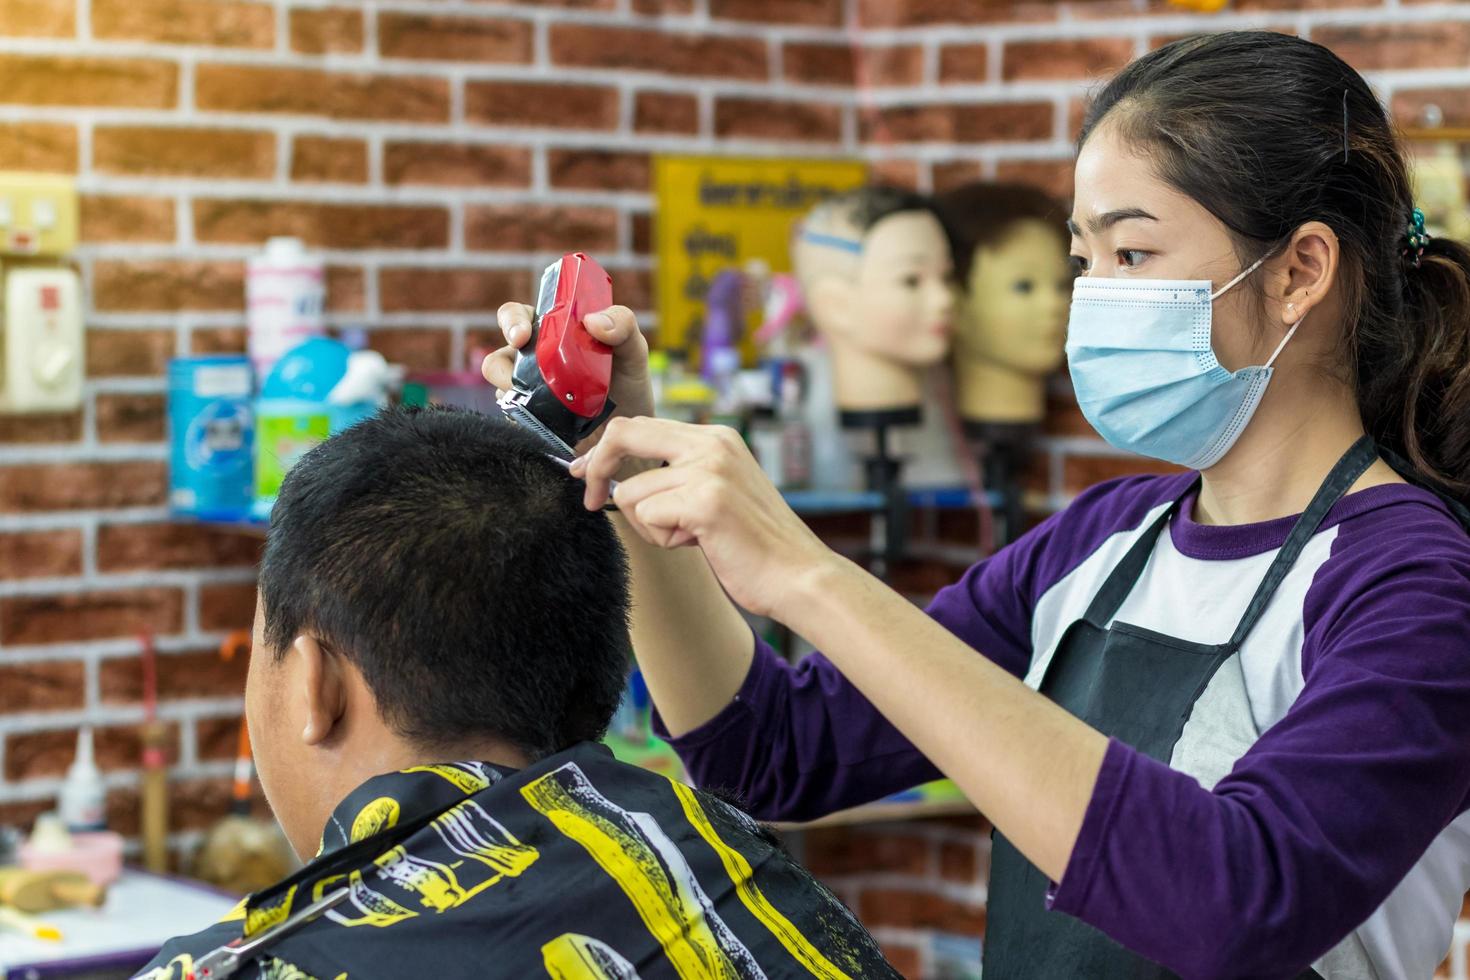 phichit, thaïlande, 20 juillet 2020 - femme coupant les cheveux d'un homme photo